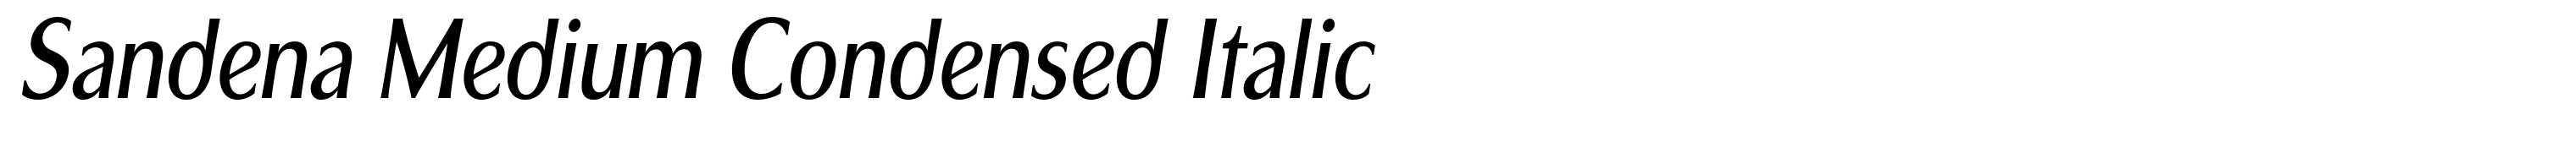 Sandena Medium Condensed Italic